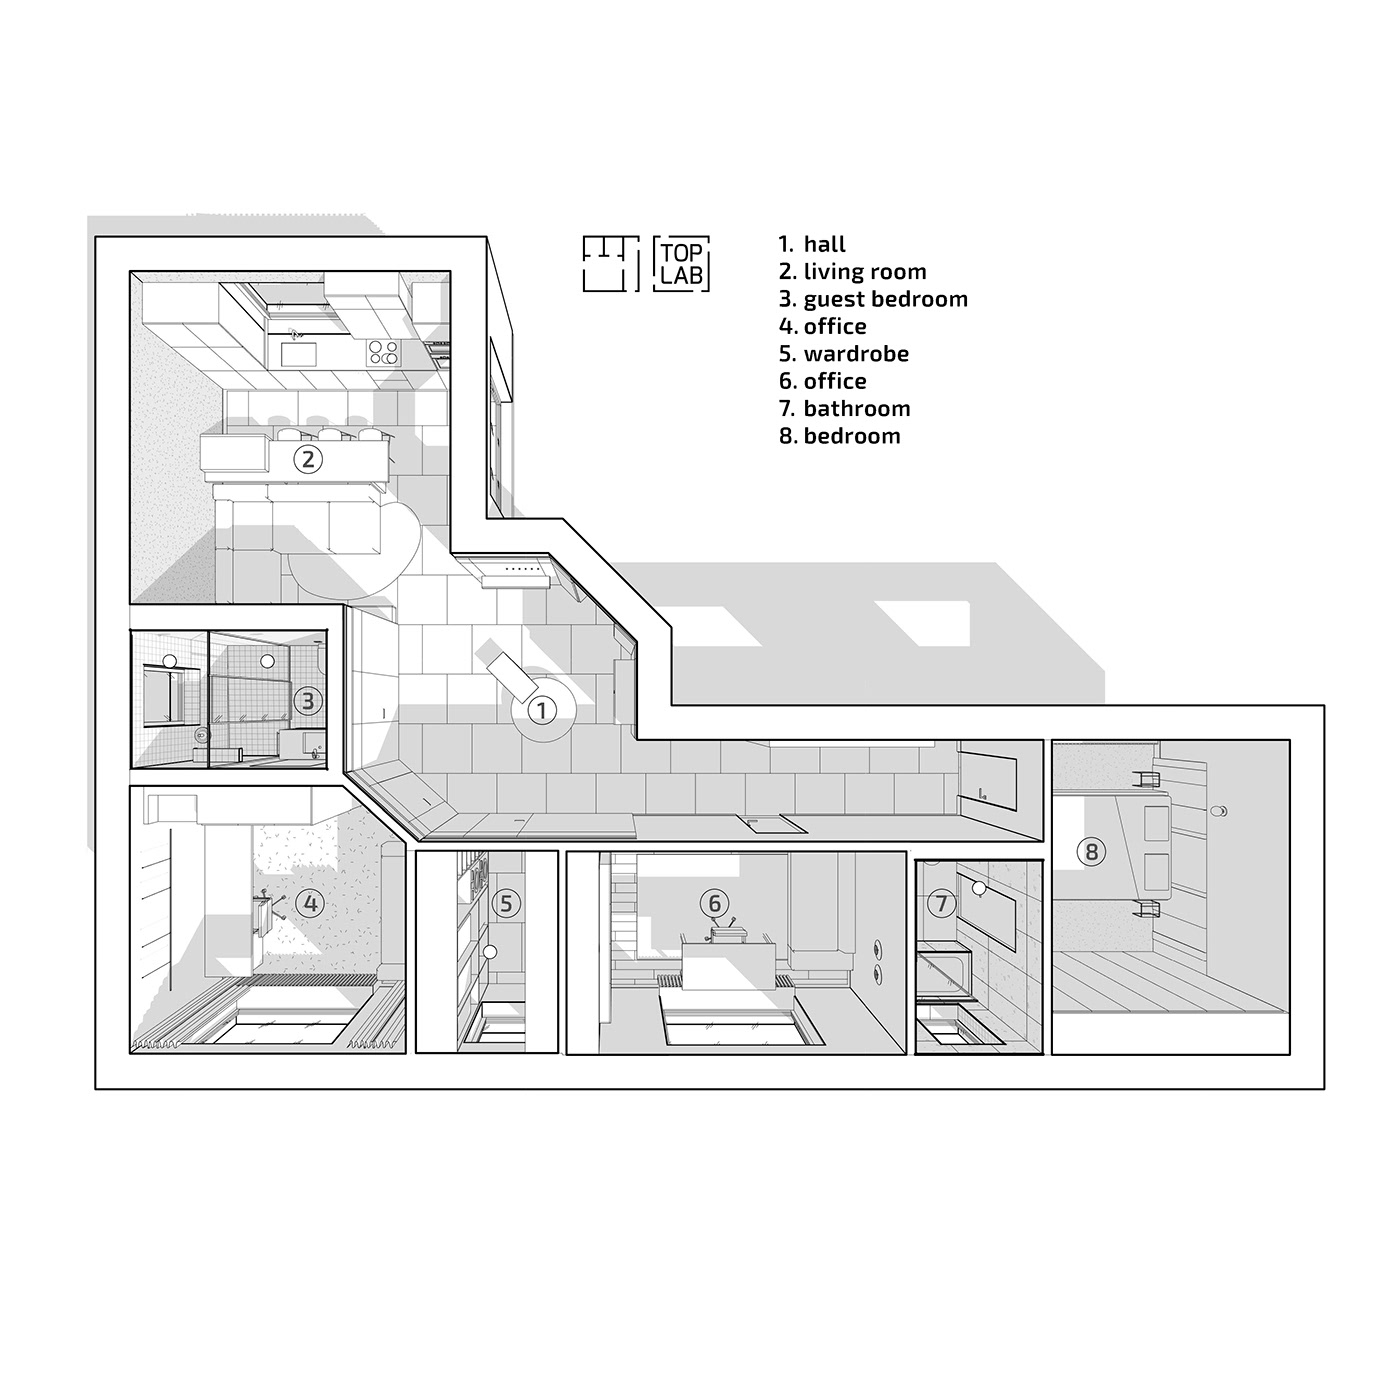 7IR arhitecture bathroom bedroom design Interior interior design  living room TOPLAB toplabinteriors